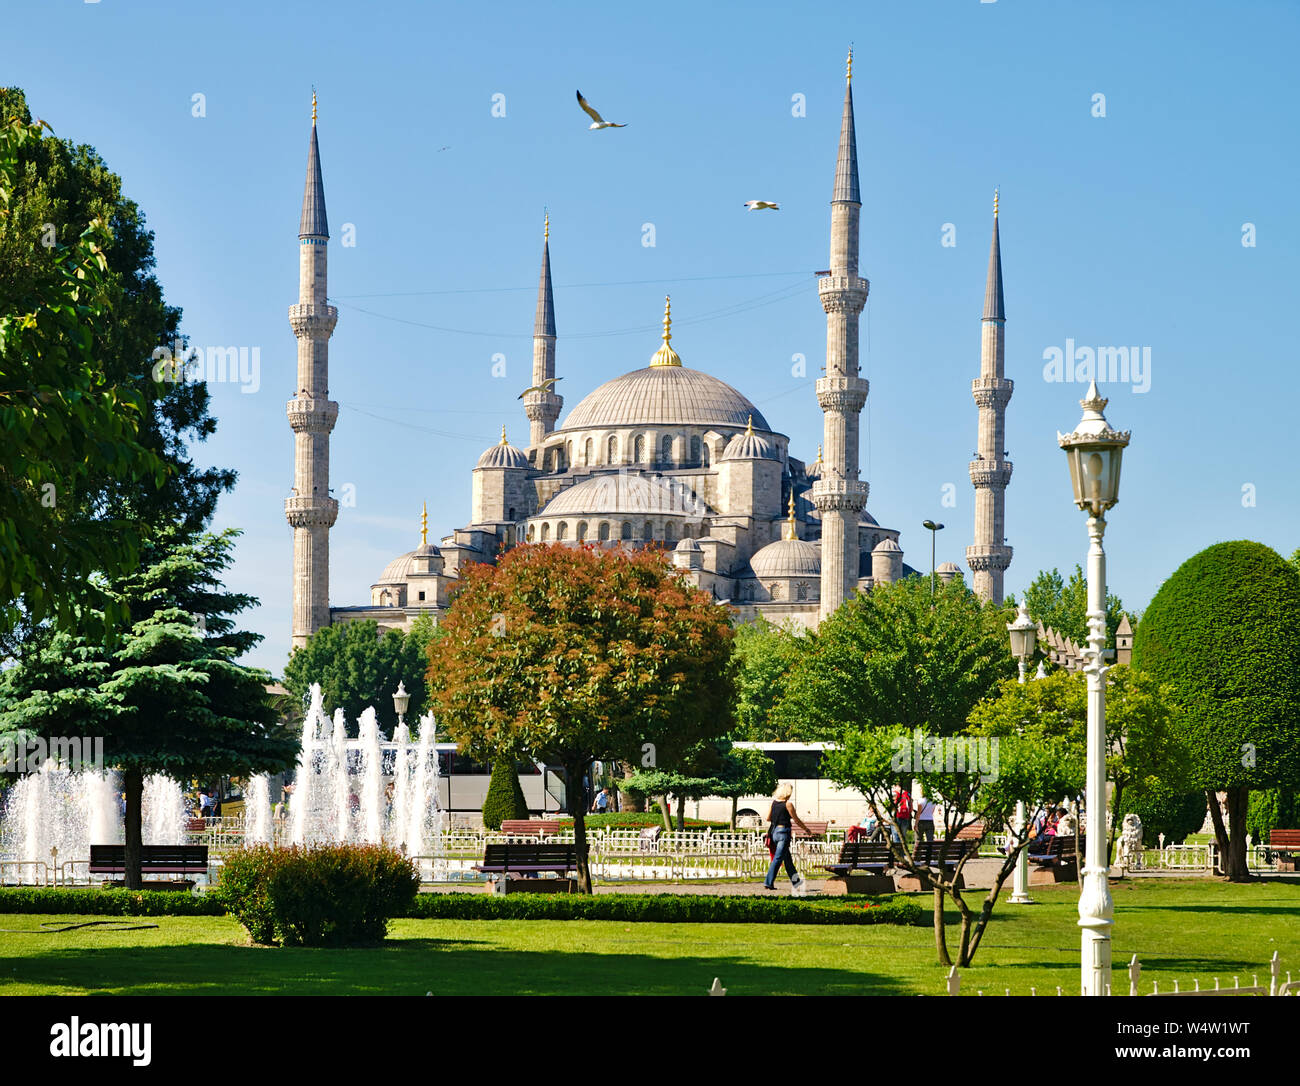 Istanbul, Turchia - 05/25/2010: Moschea blu (Sultanhmet camii) e sulla piazza di Sultanahmet. Foto Stock